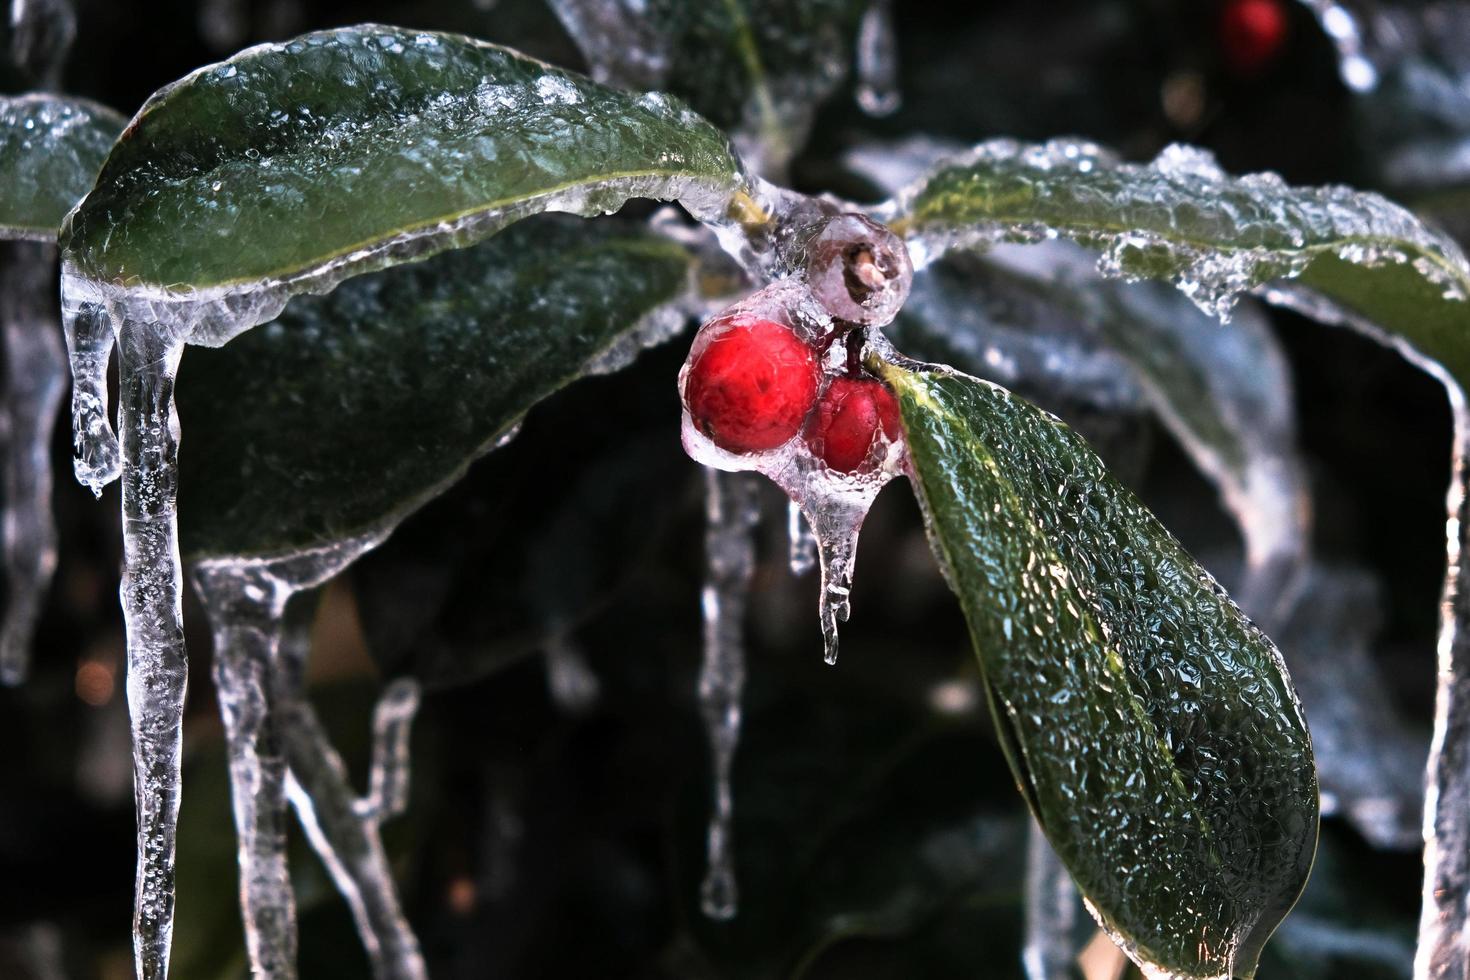 le houx rouge aux feuilles vertes, symbole de noël, avec de la neige et de la glace autour, dans la campagne du piémont en italie photo